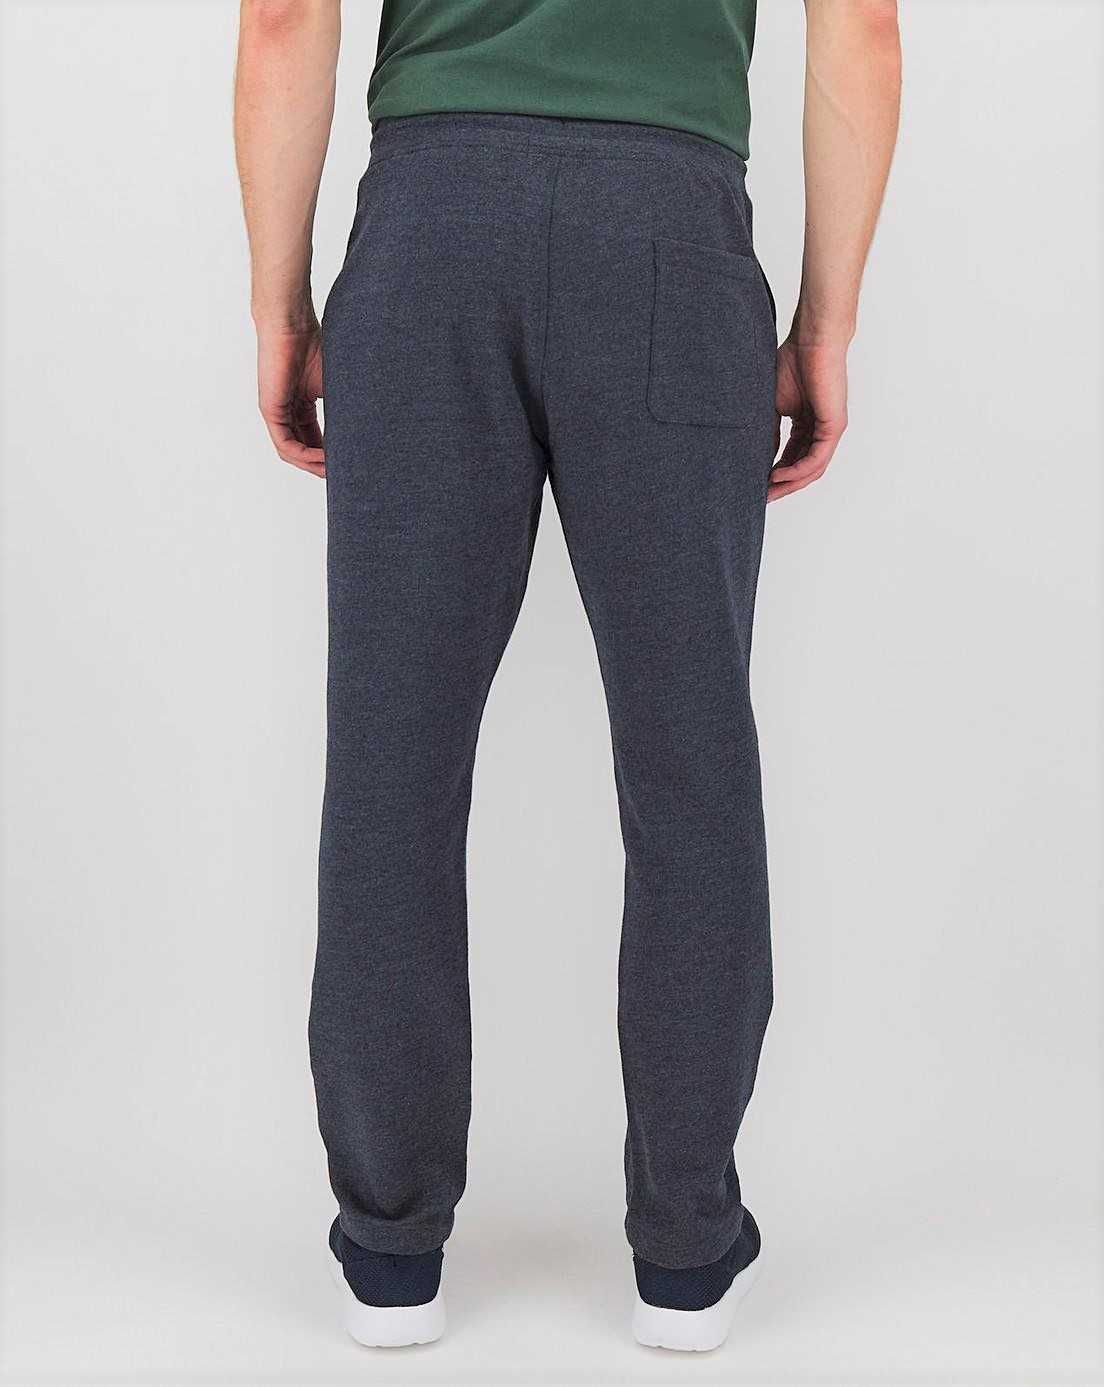 Jacamo джогеры брюки мужские большой размер 72/74 трикотаж на флисе